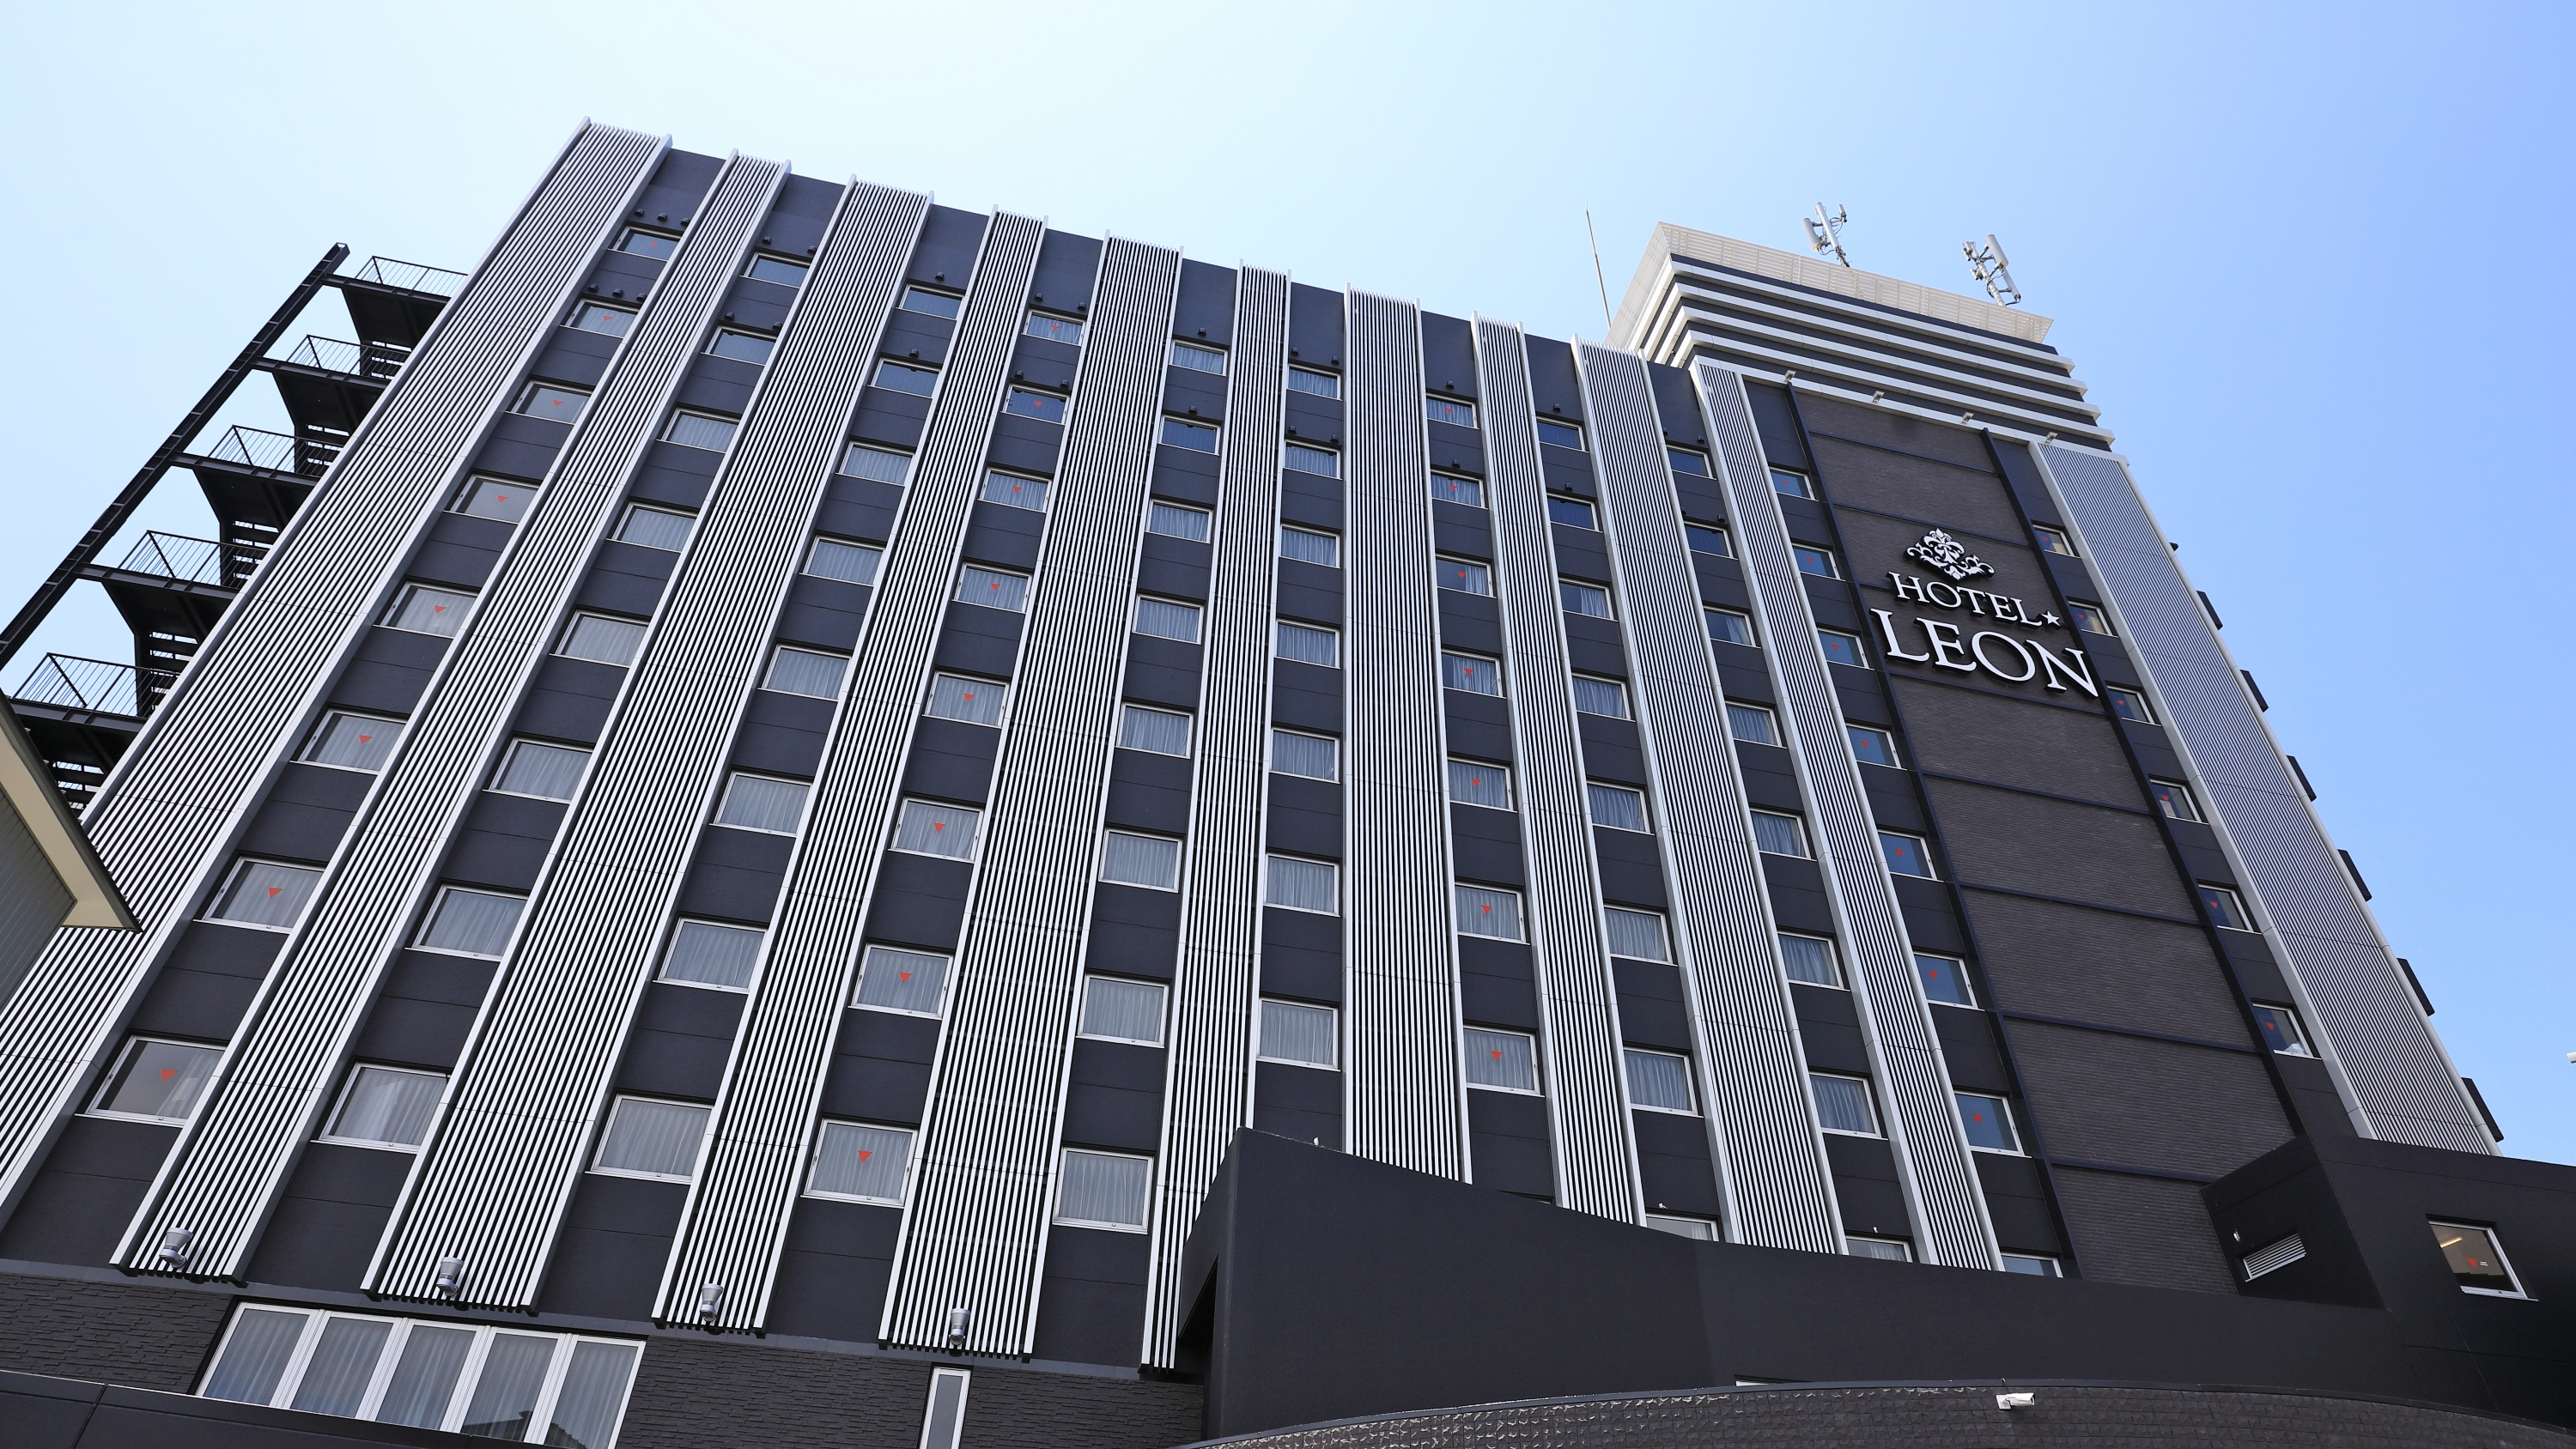 ホテルレオン浜松